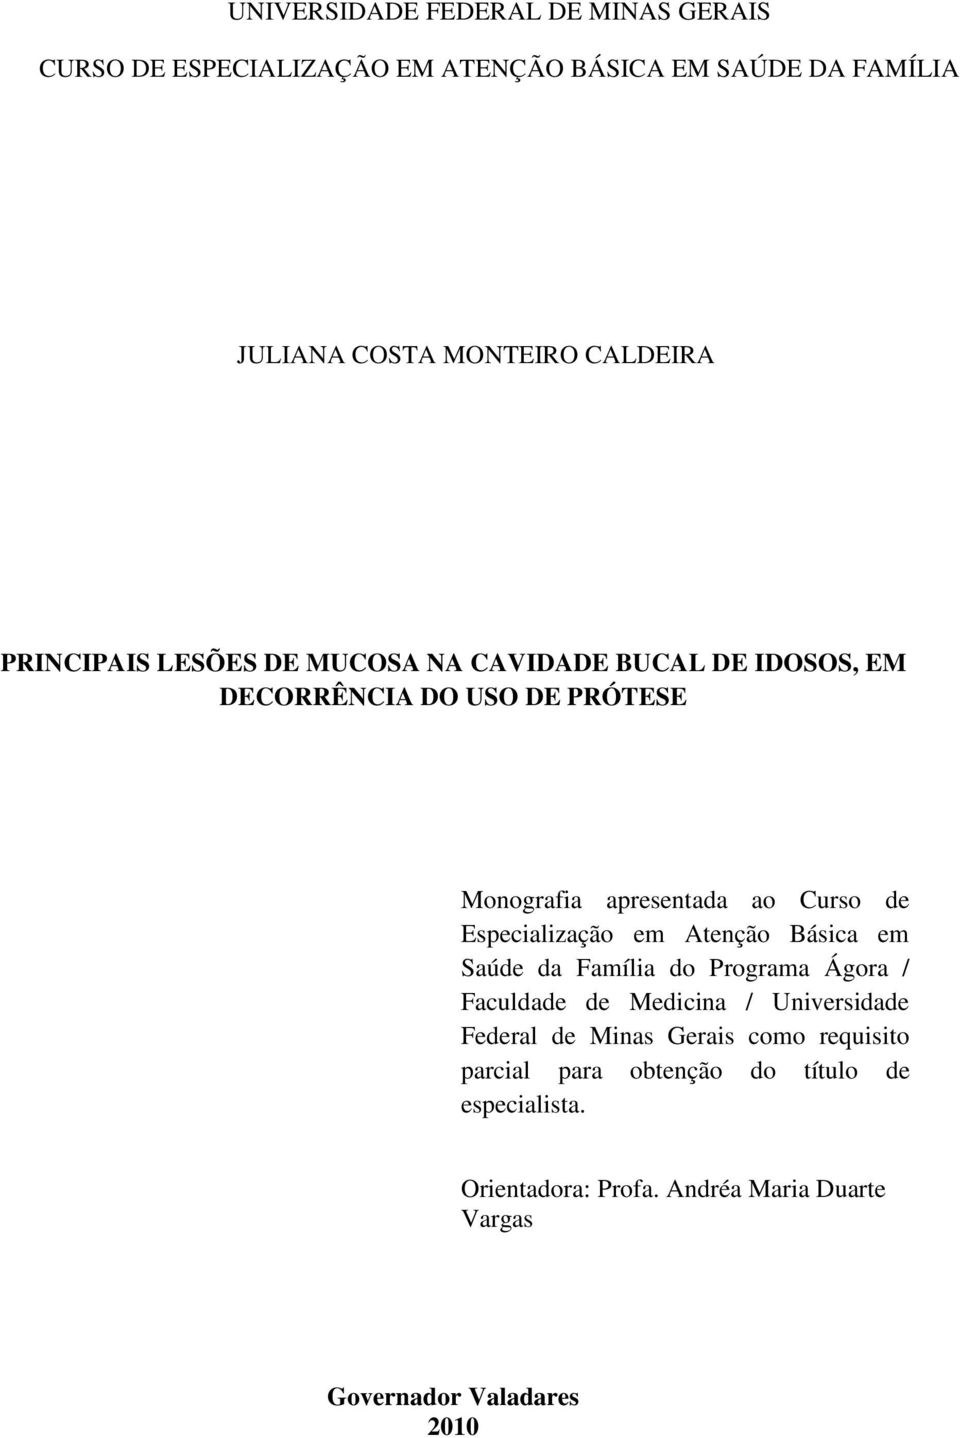 Especialização em Atenção Básica em Saúde da Família do Programa Ágora / Faculdade de Medicina / Universidade Federal de Minas